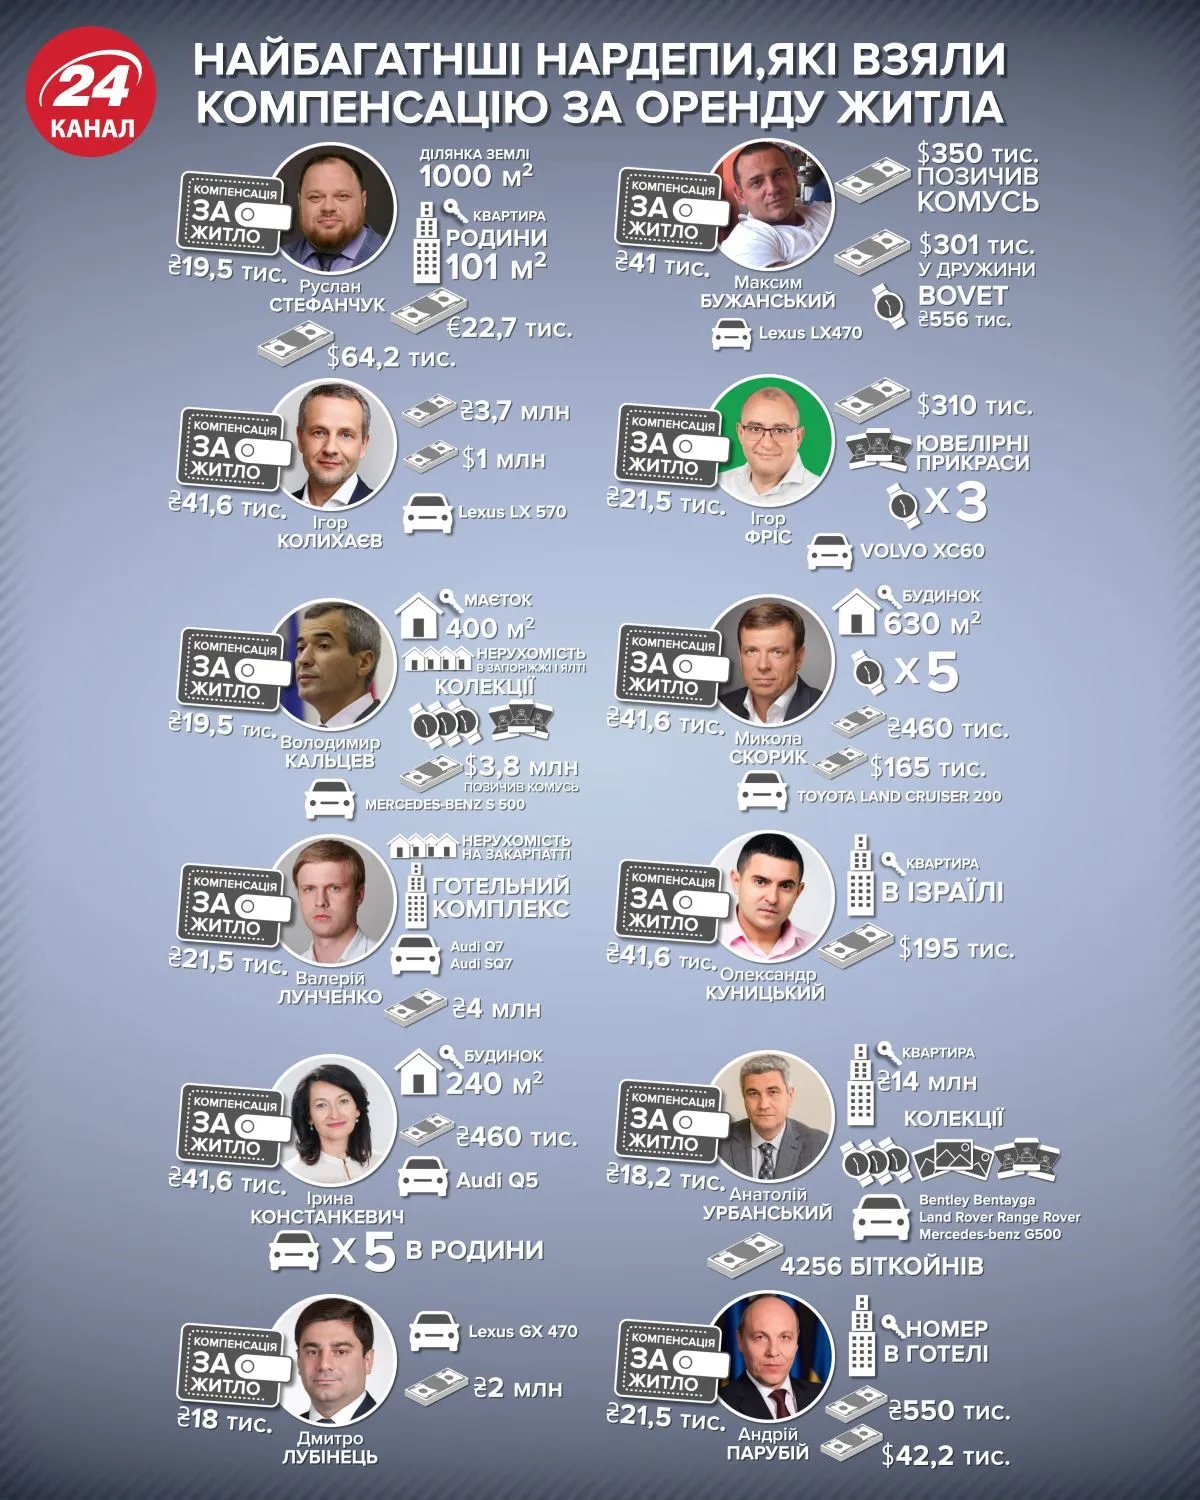 народні депутати компенсація оренда житла статистика інфографіка